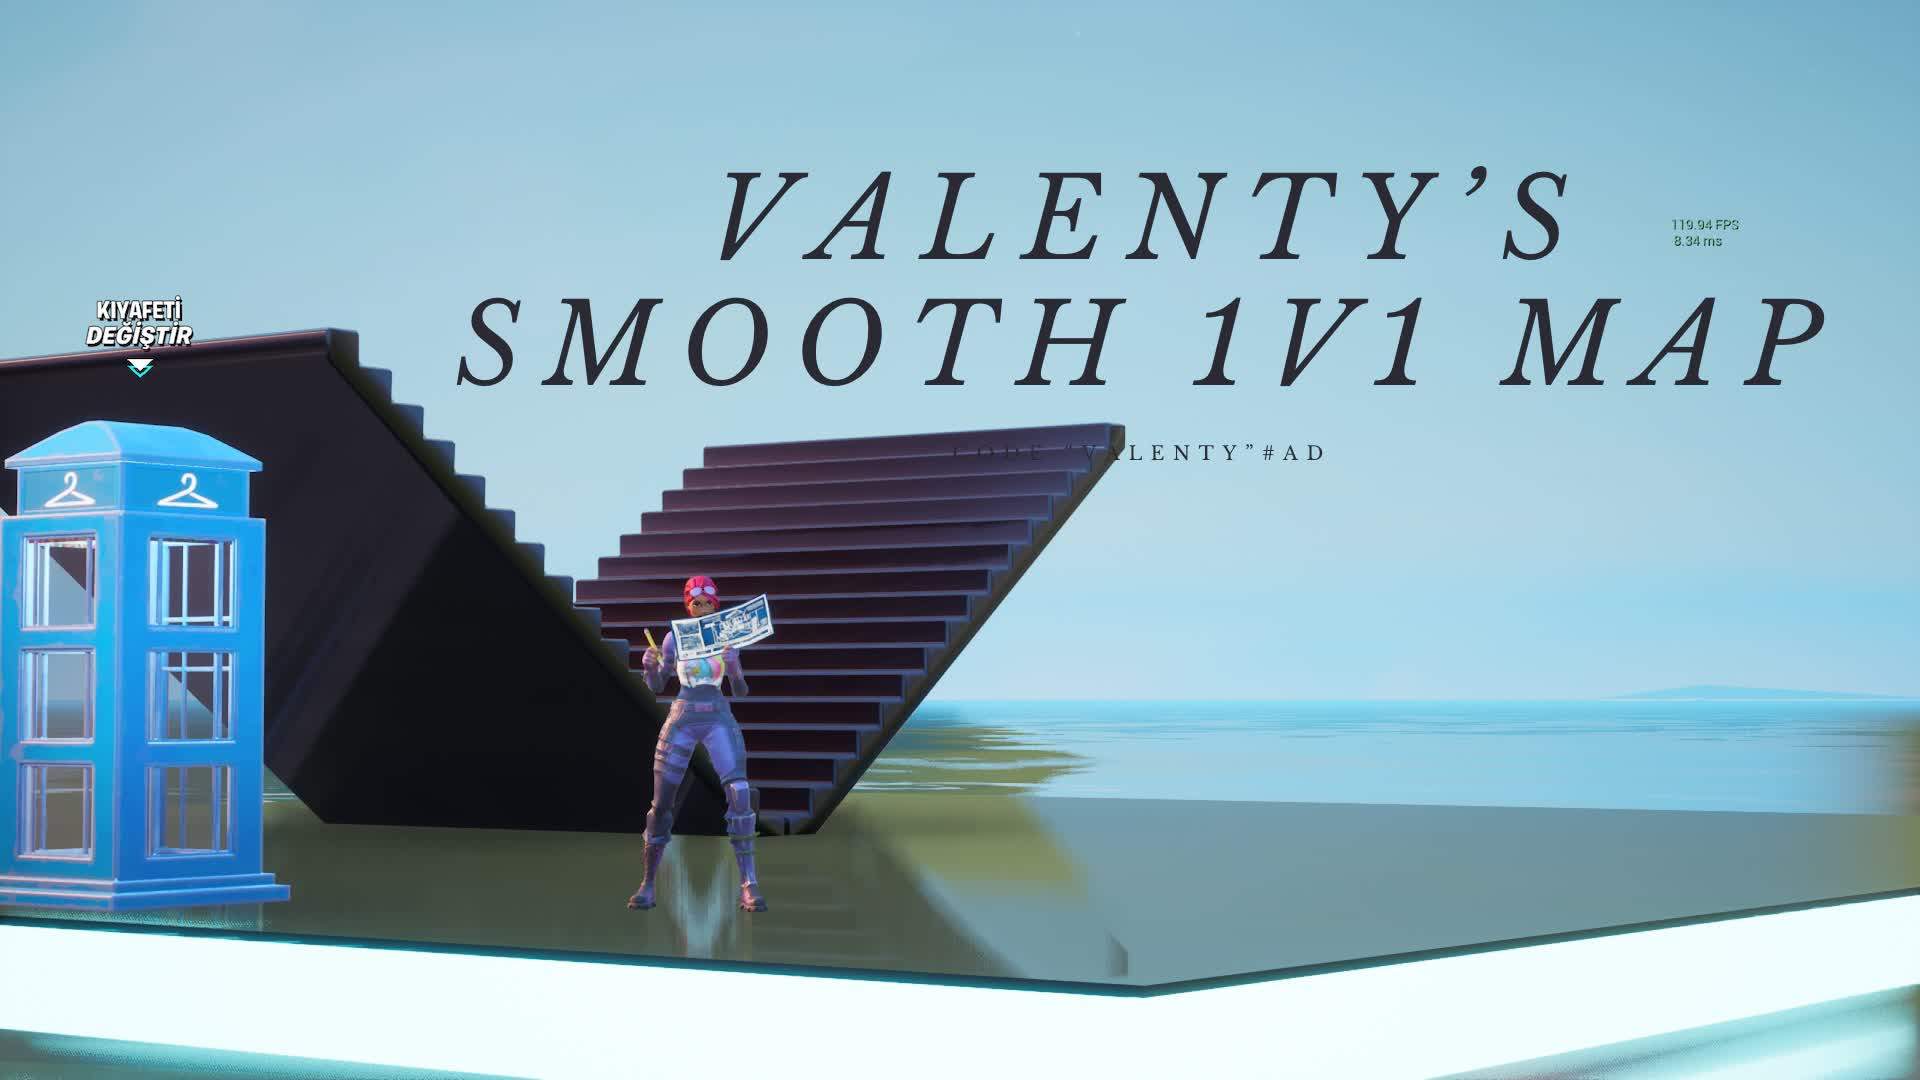 Valenty's Smooth 1v1 Map